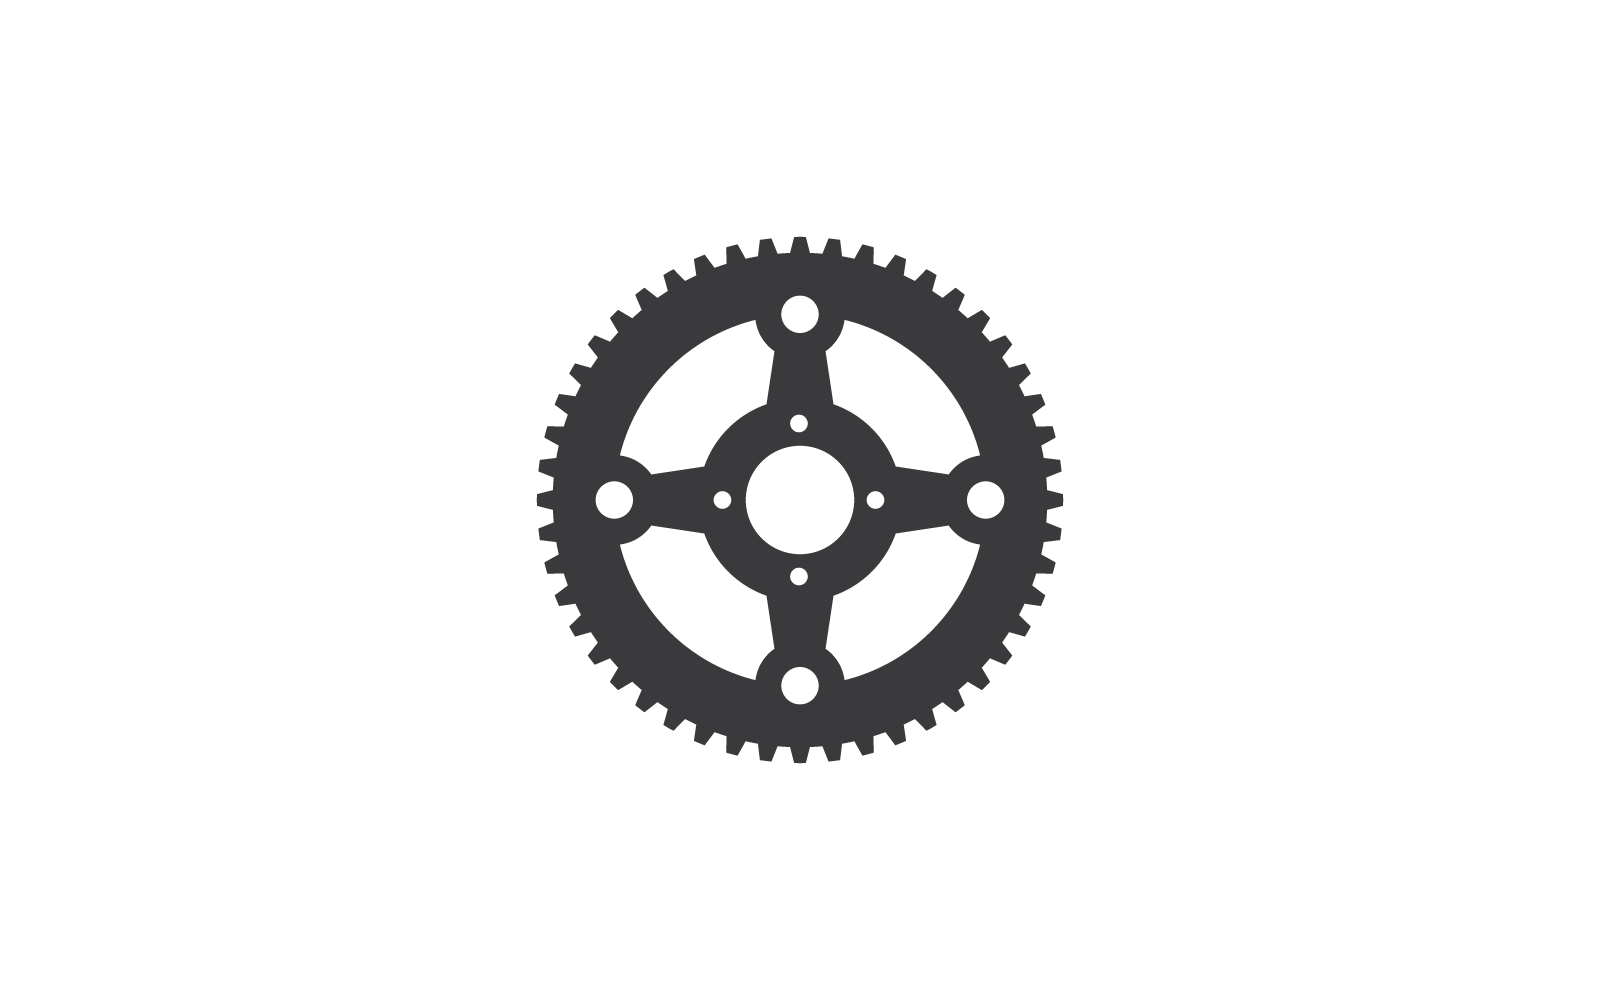 Design vetorial de ilustração de roda dentada de bicicleta